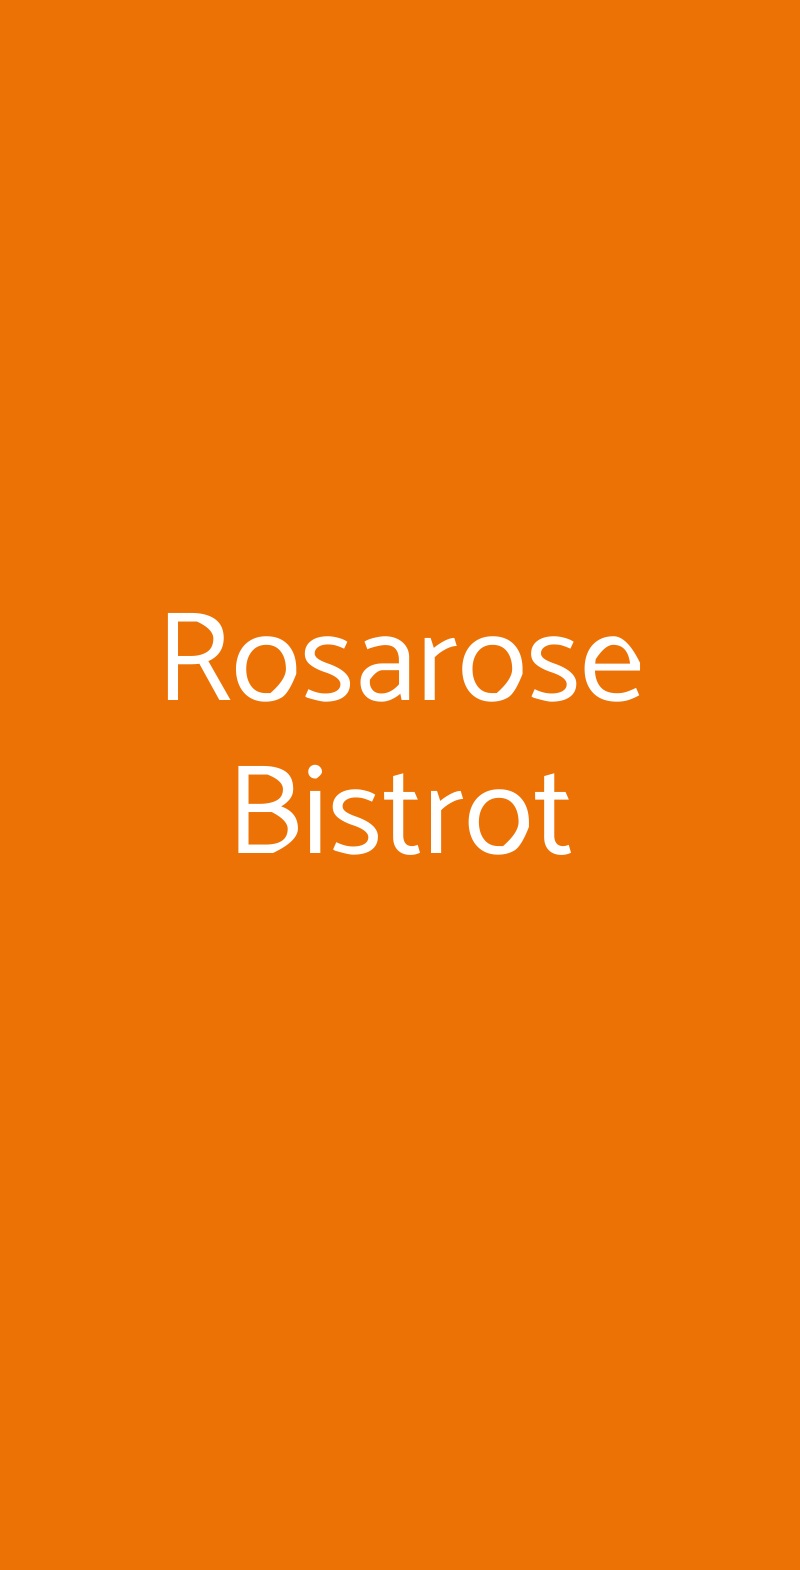 Rosarose Bistrot Bologna menù 1 pagina